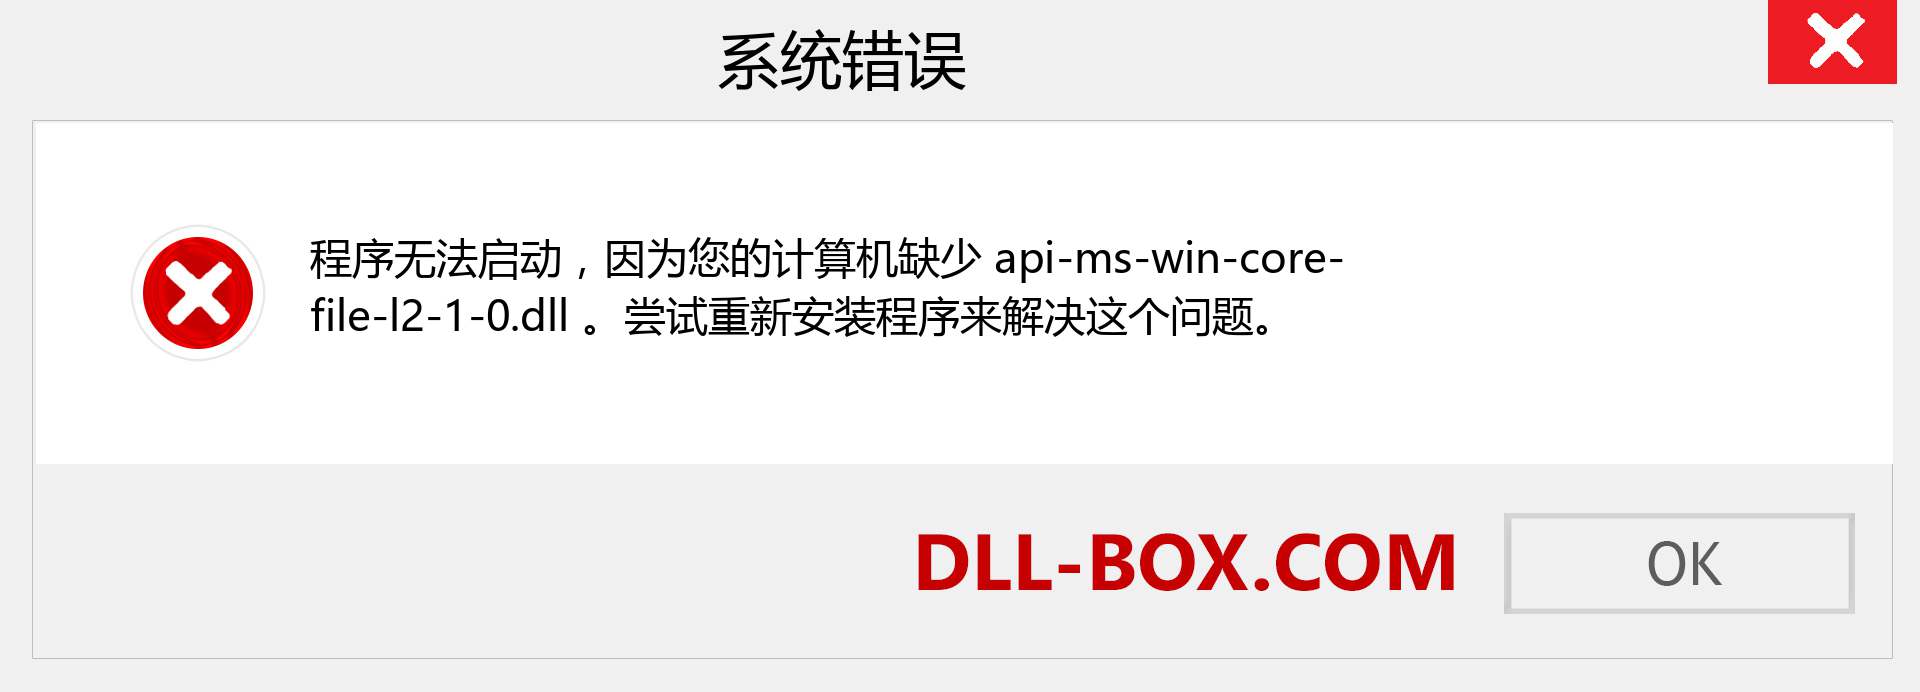 api-ms-win-core-file-l2-1-0.dll 文件丢失？。 适用于 Windows 7、8、10 的下载 - 修复 Windows、照片、图像上的 api-ms-win-core-file-l2-1-0 dll 丢失错误